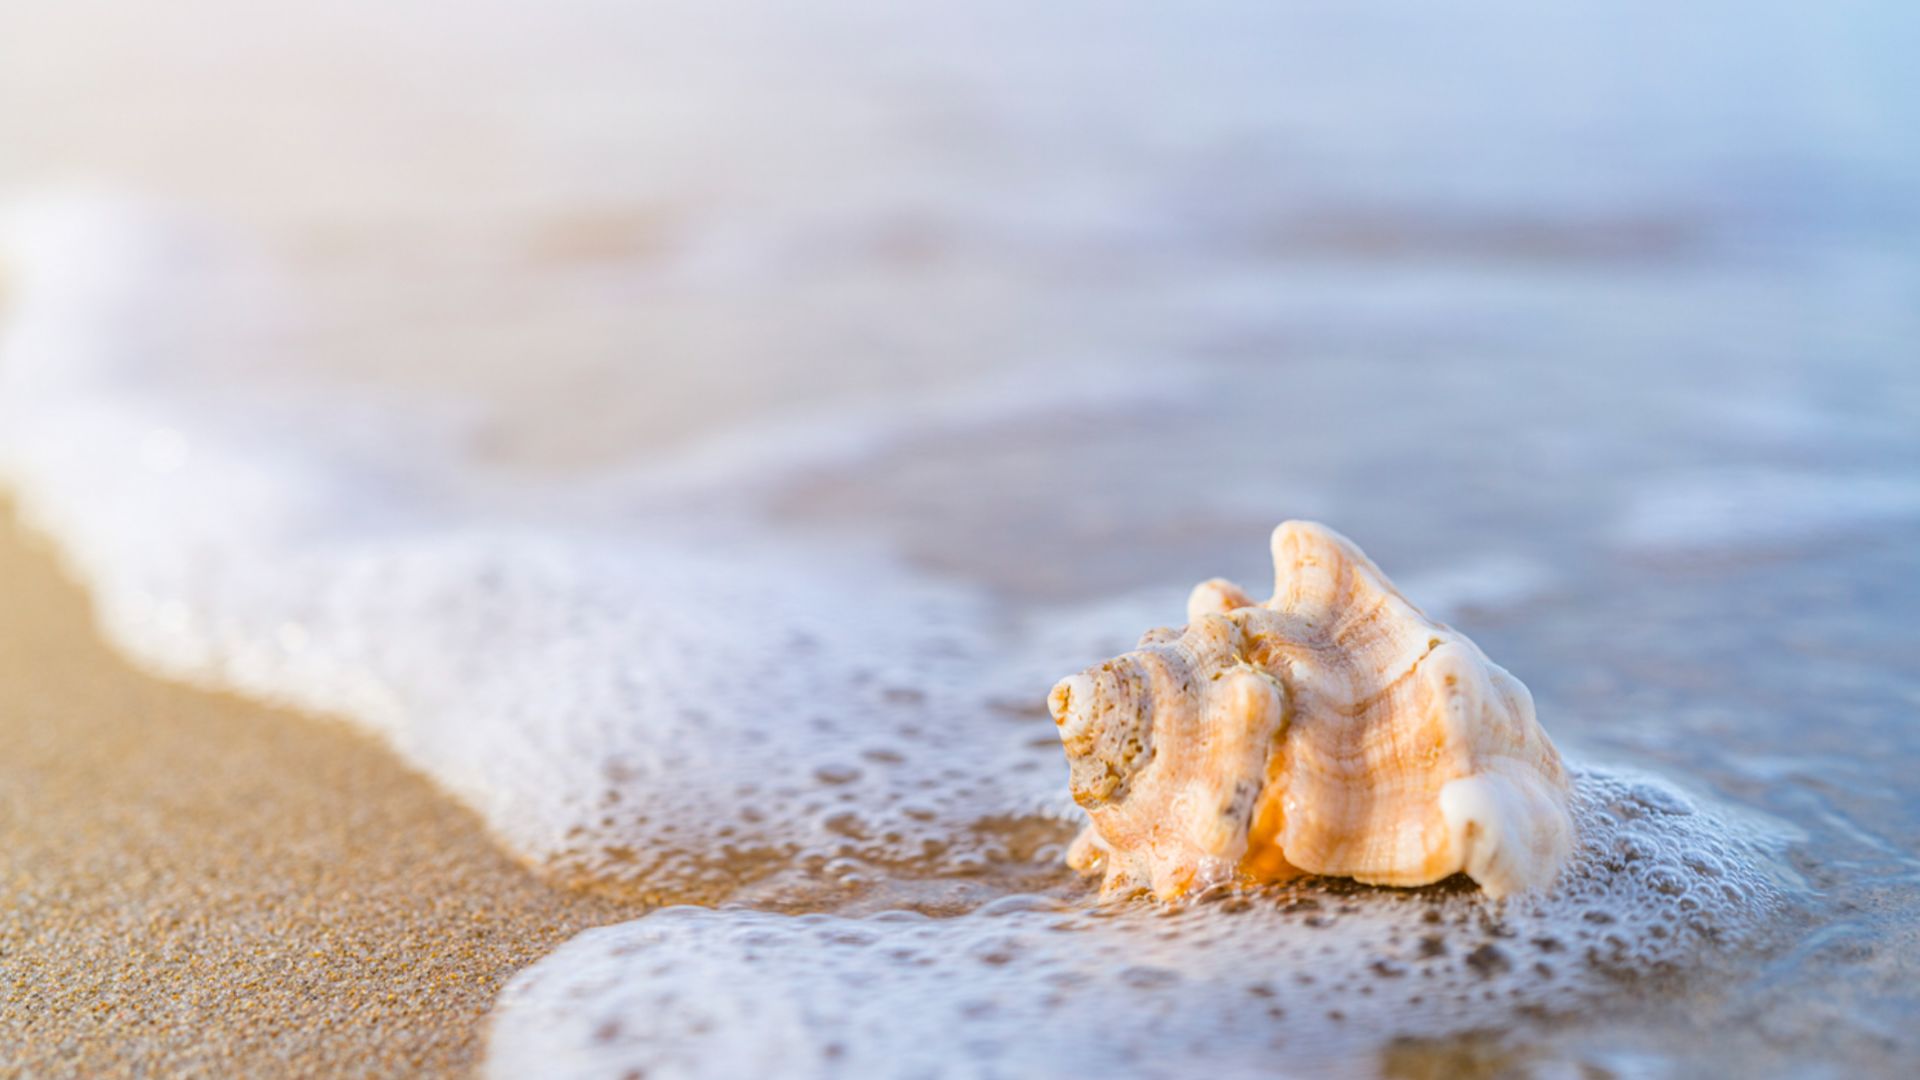 A Seashell On A Beach